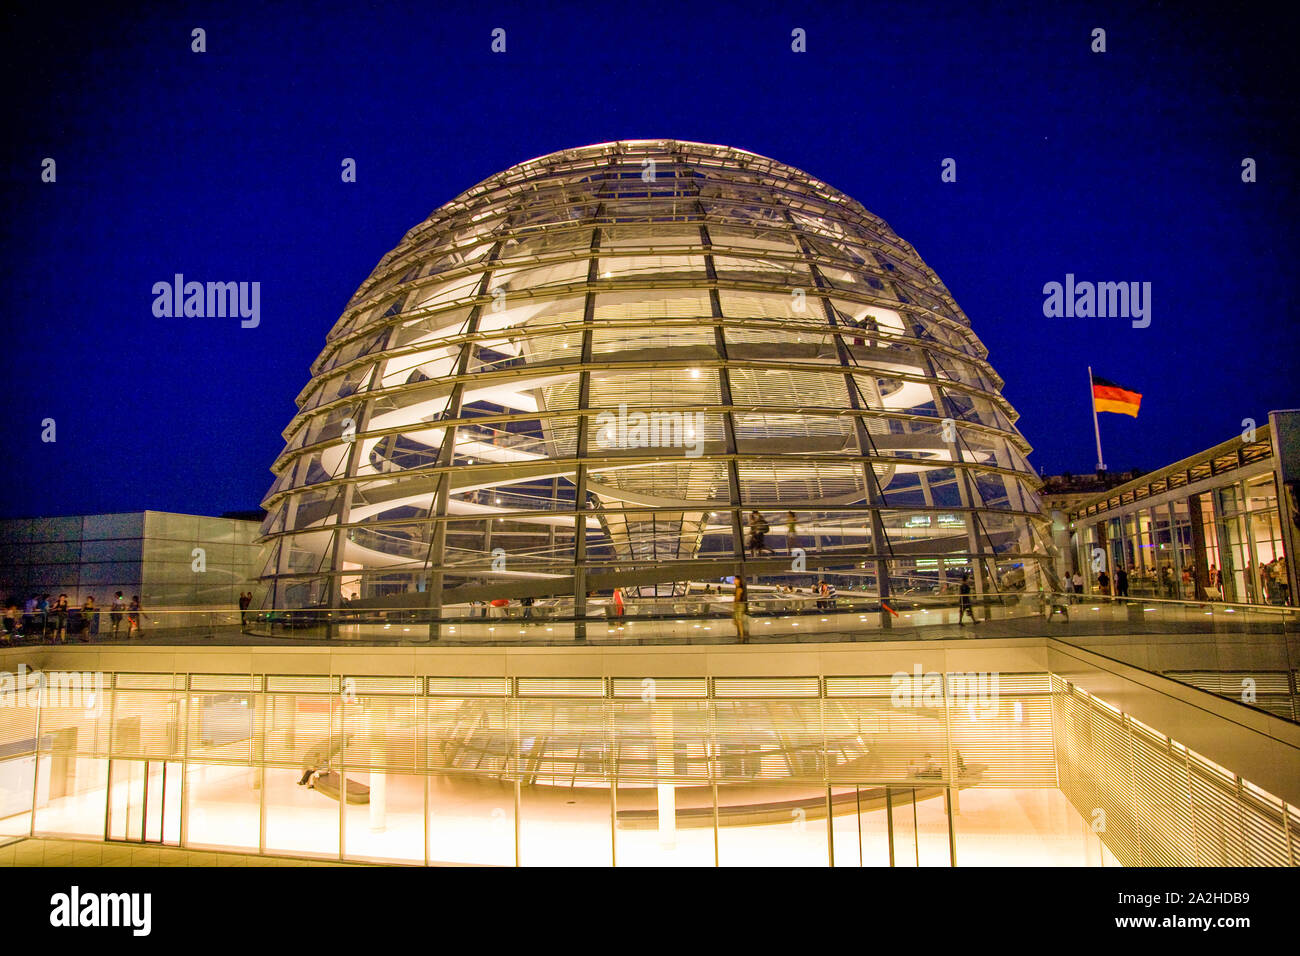 La cupola di vetro in cima al Reichstag di notte dove i visitatori possono osservare il Bundestag - la Camera bassa del tedesco federale europeo. Berlino Germania Foto Stock